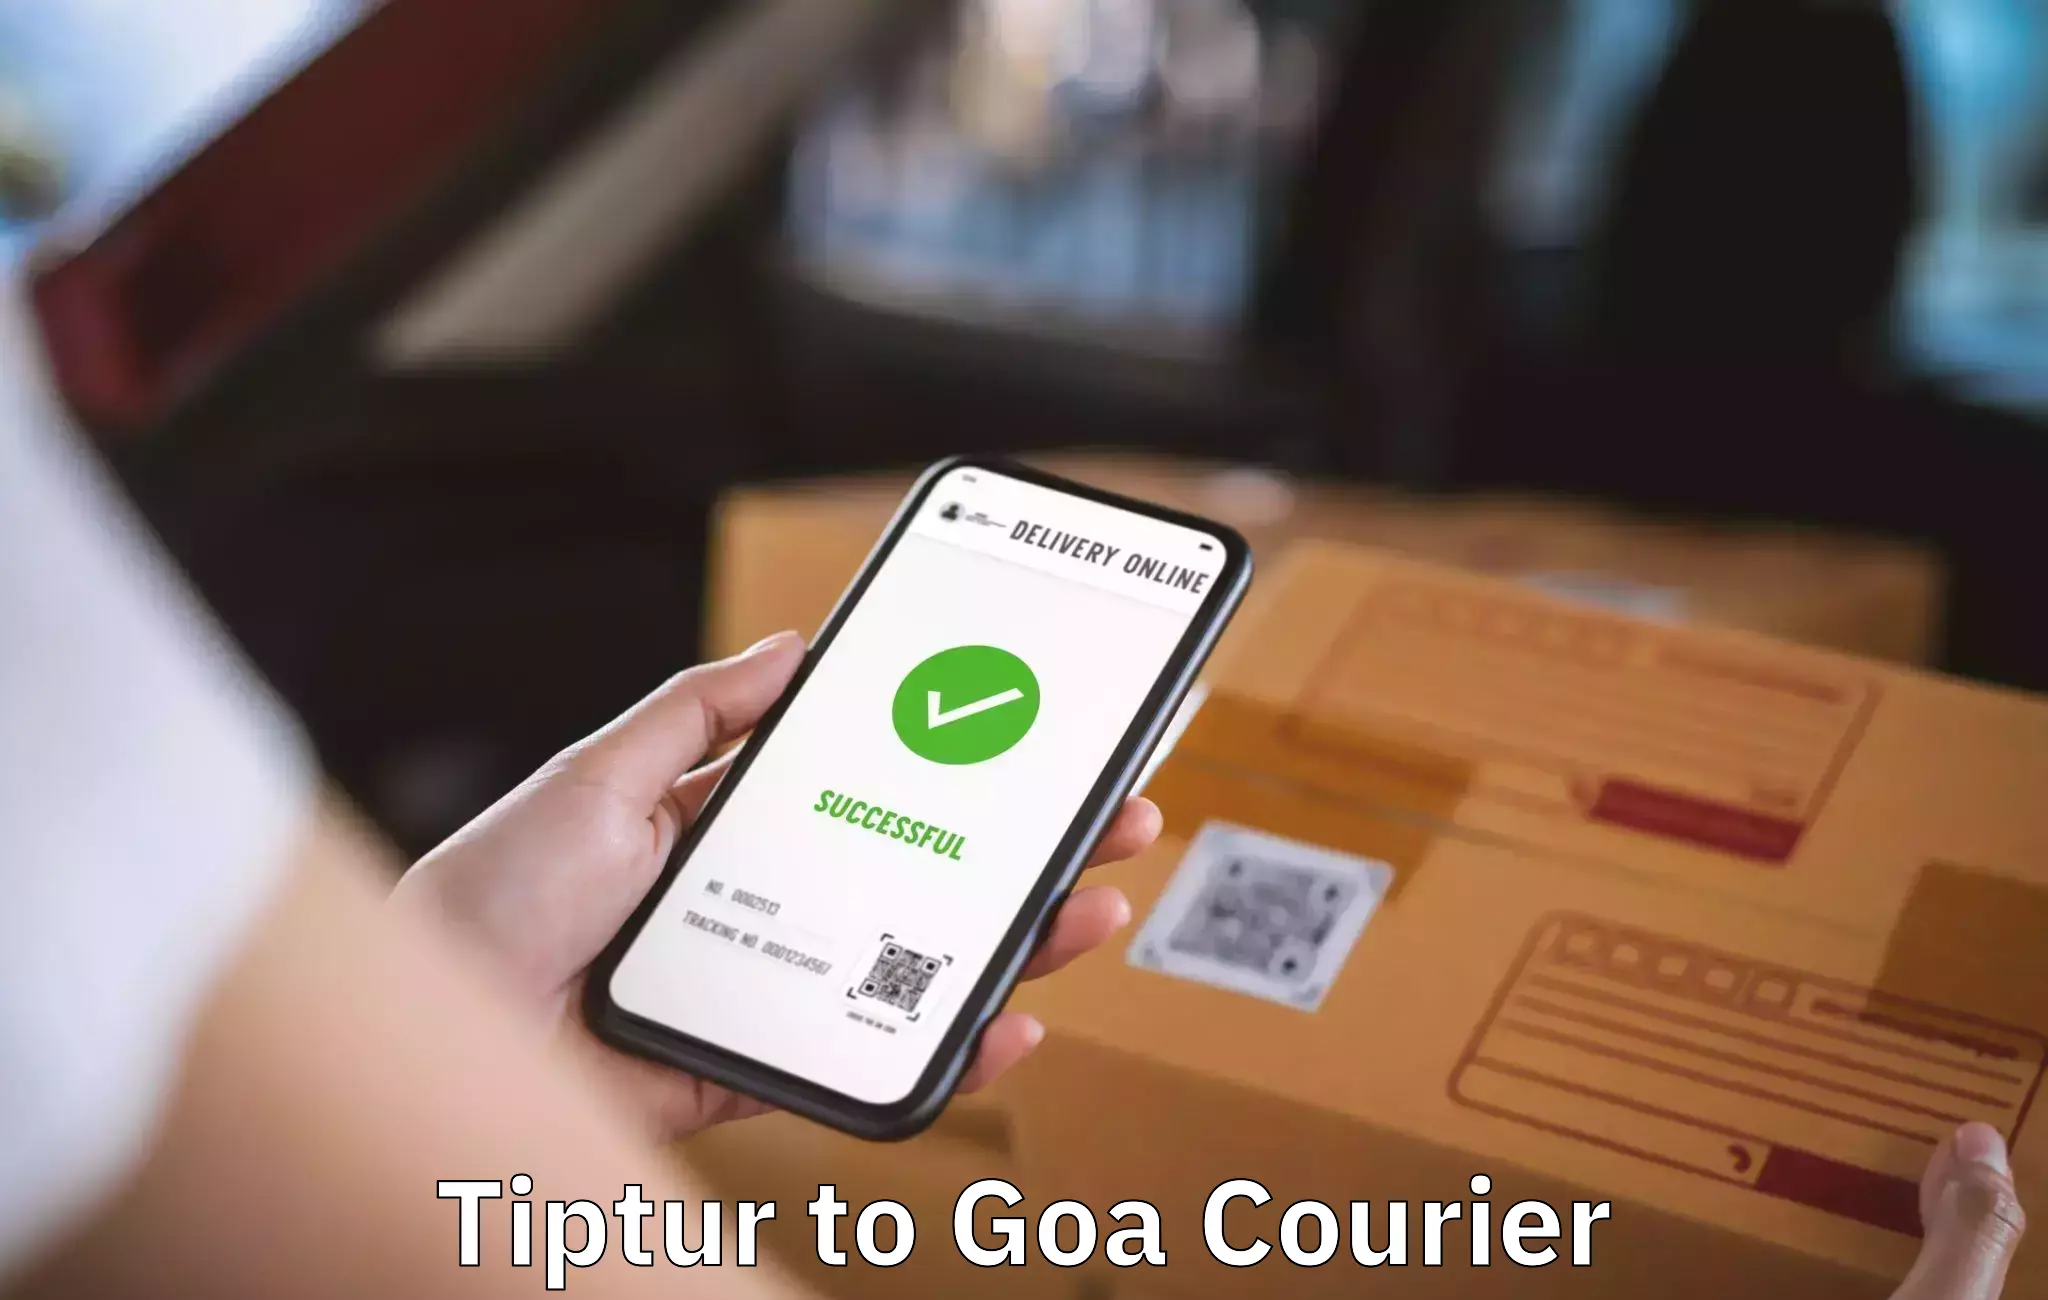 Seamless moving process Tiptur to Goa